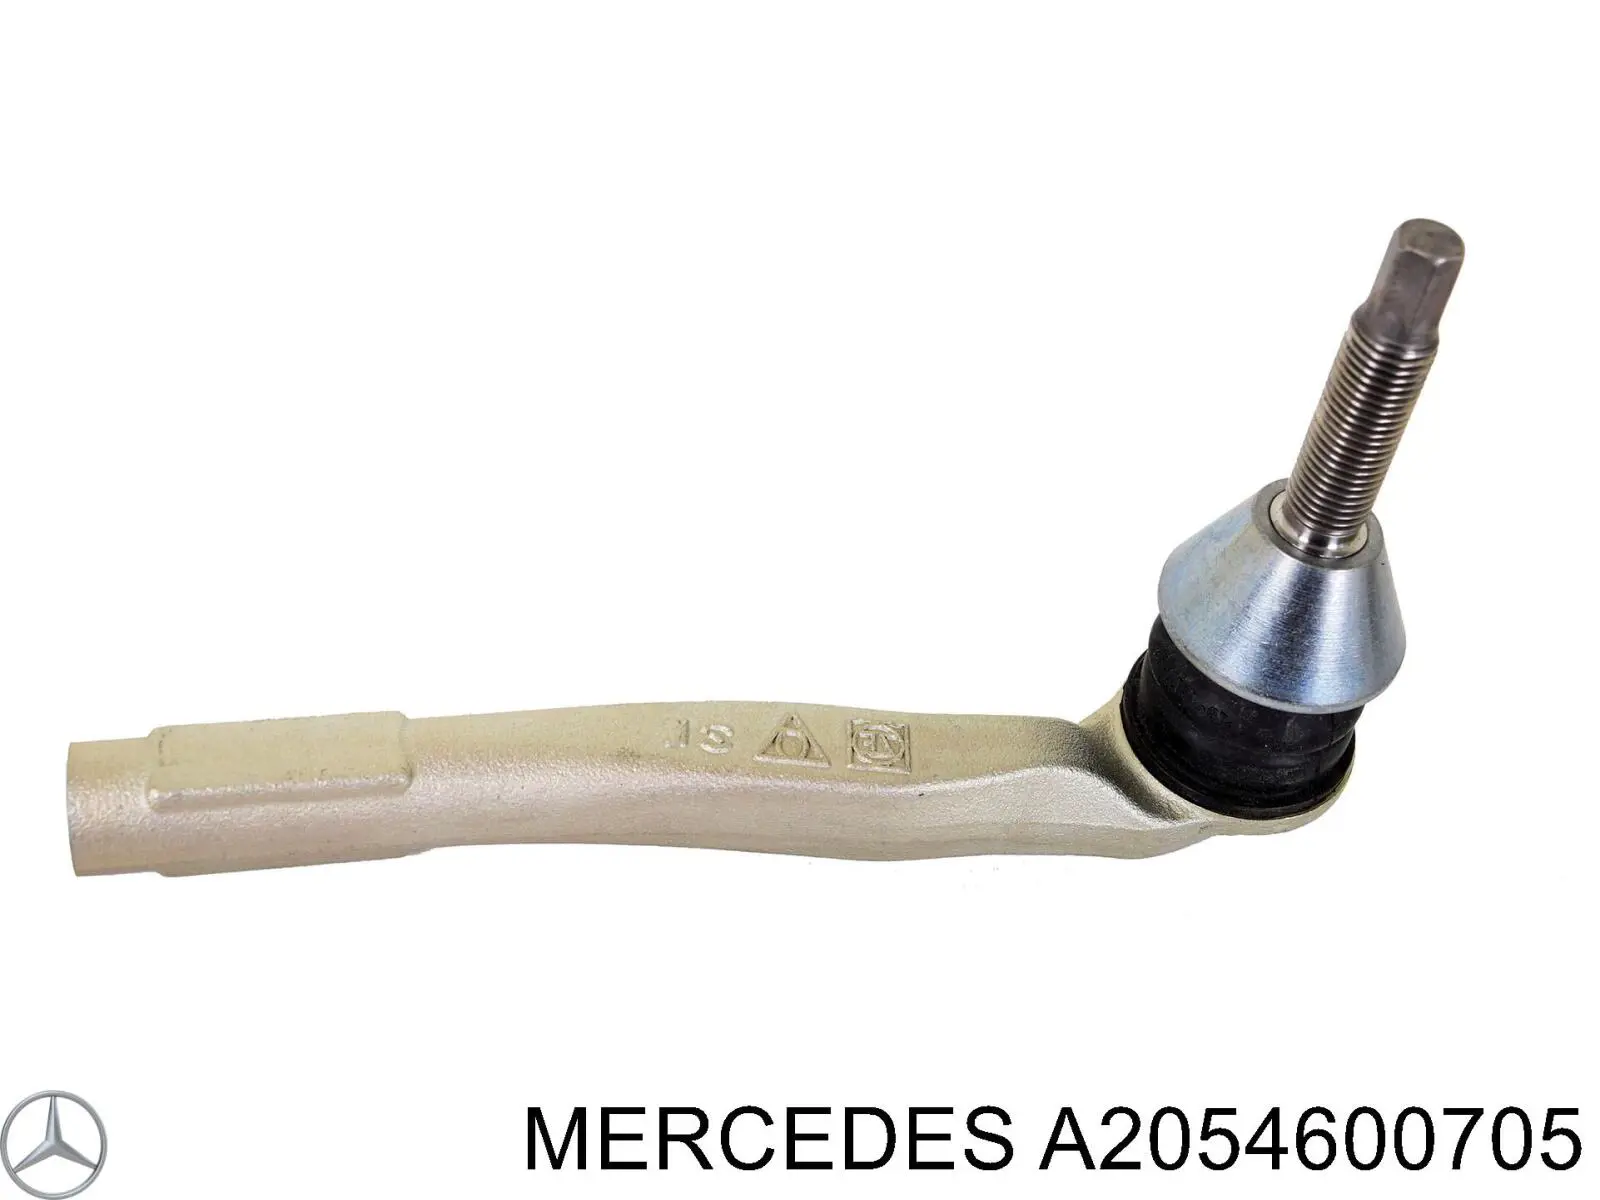 A2054600705 Mercedes ponta externa da barra de direção